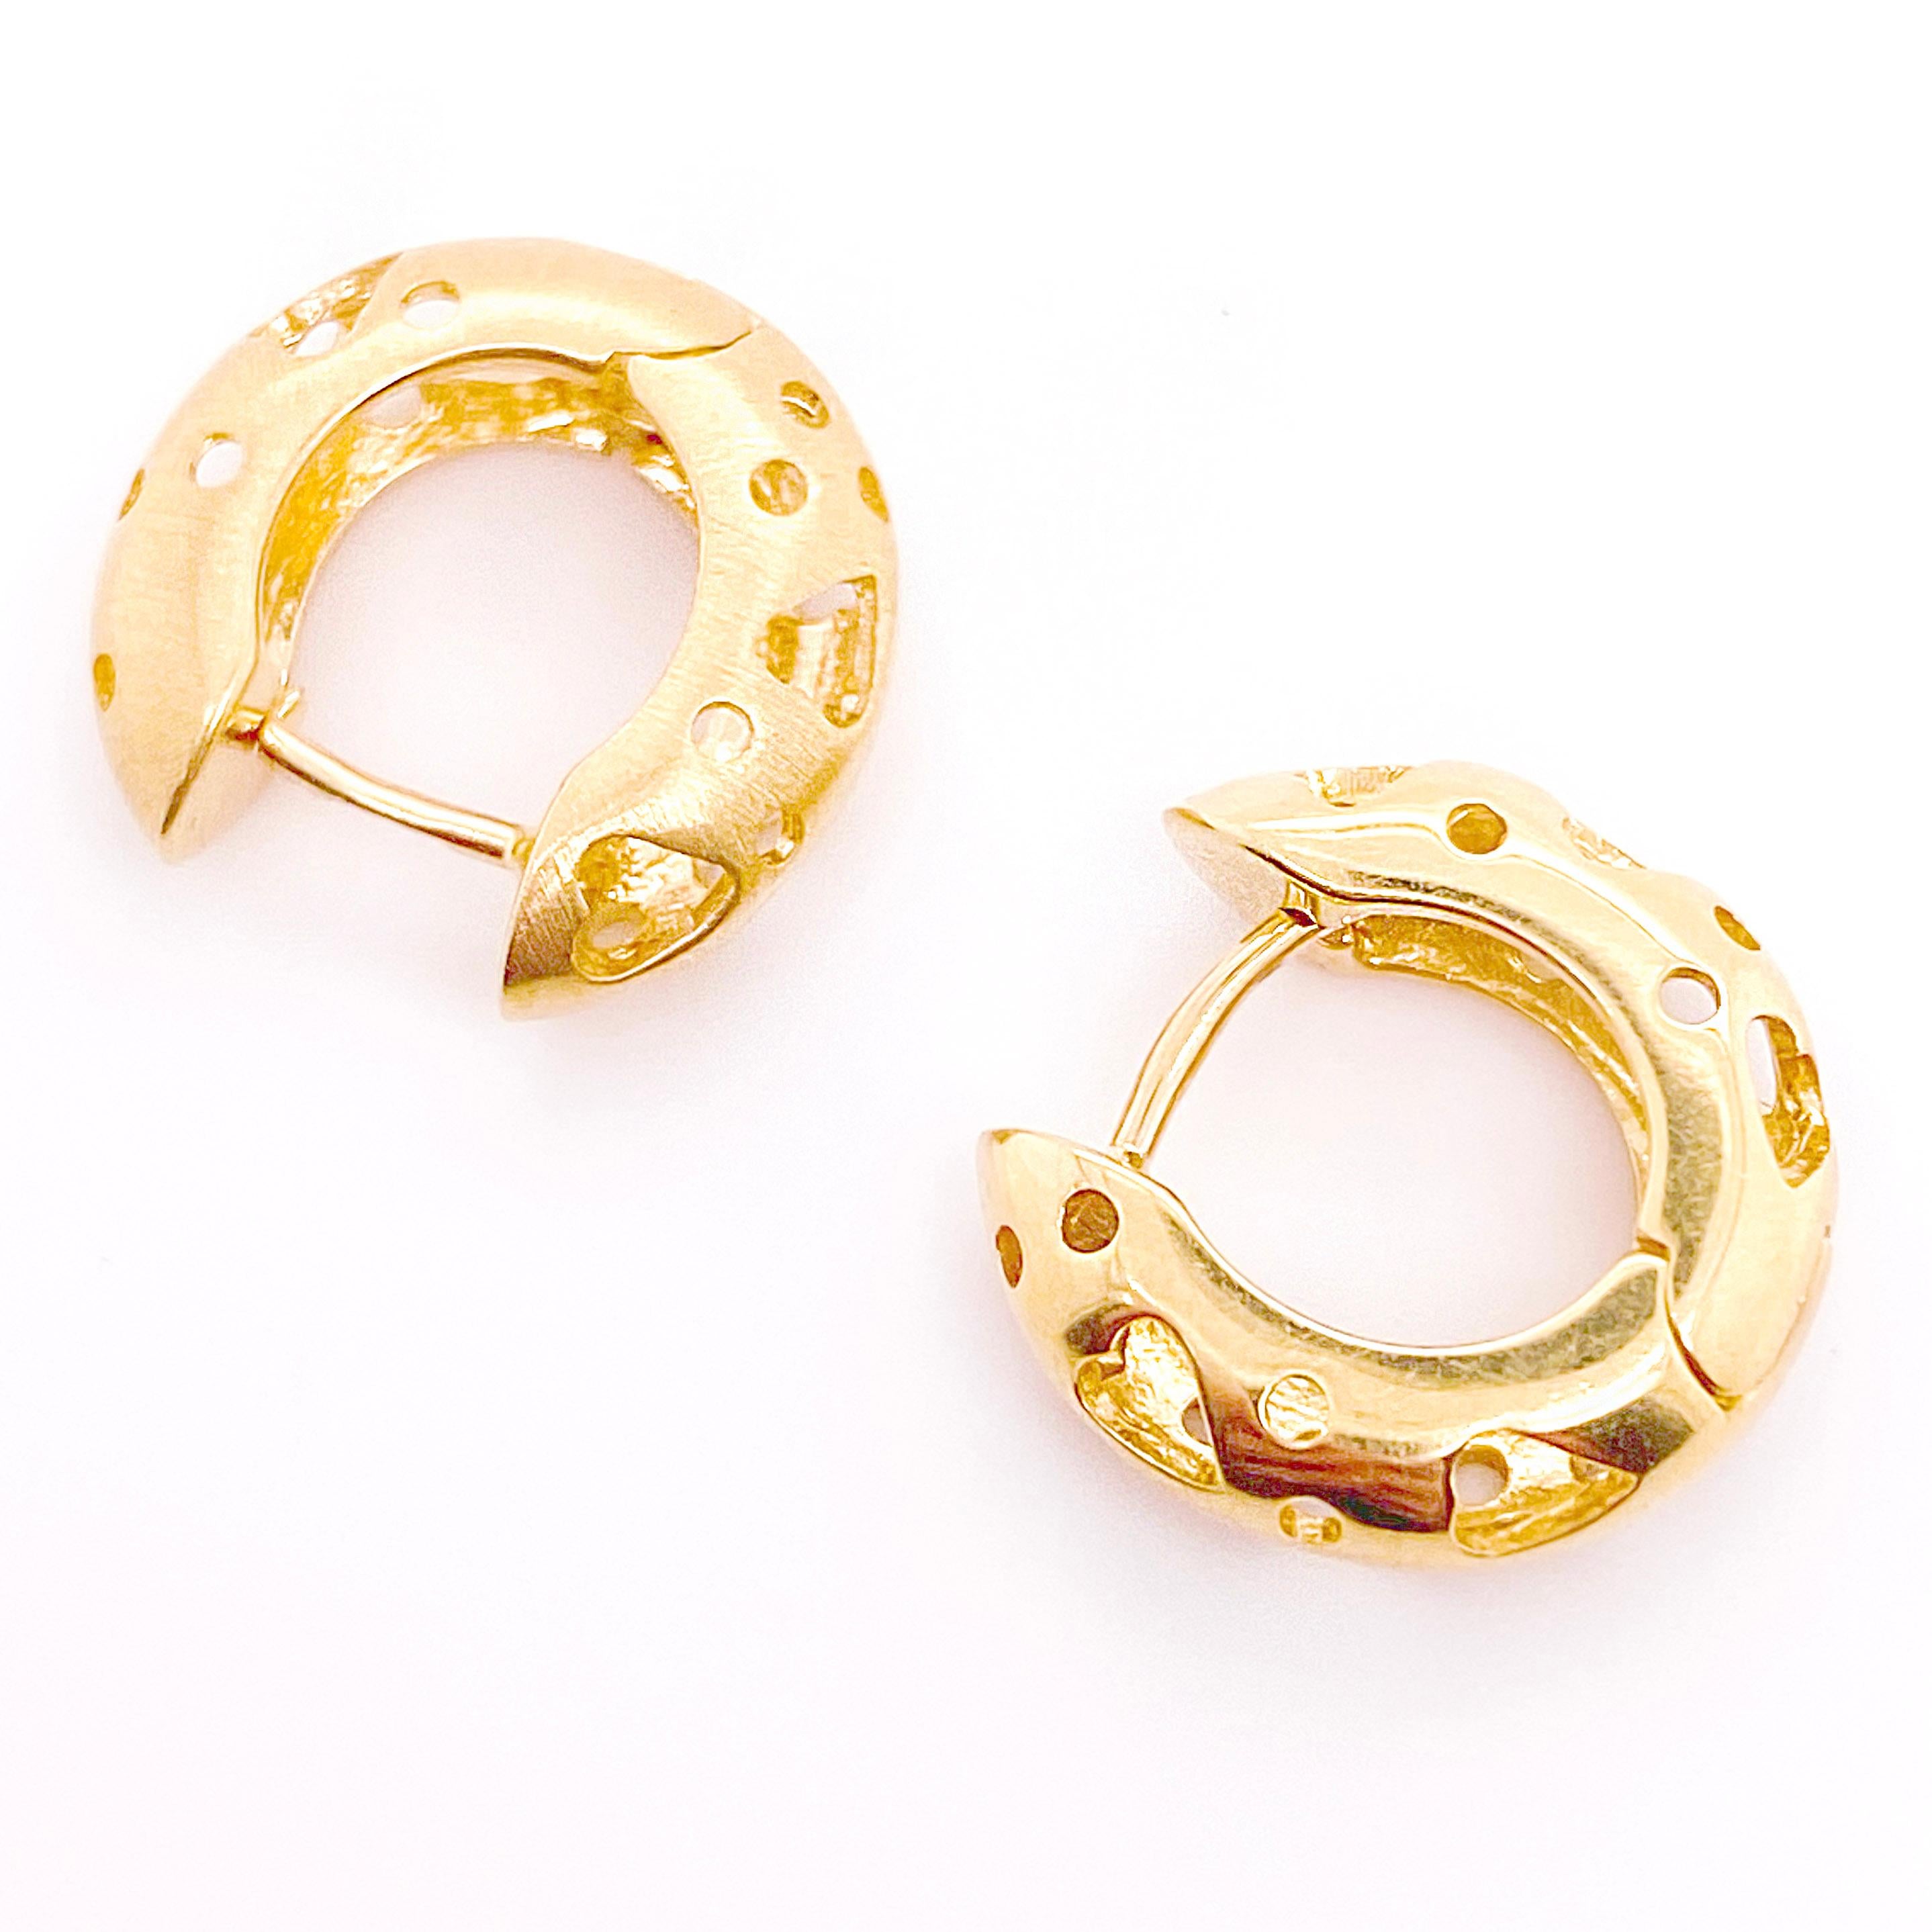 Diese Schönheiten aus 18 Karat Gold schmiegen sich perfekt an das Ohrläppchen! Huggie-Ohrringe sind der bevorzugte Stil für die aktive Frau, da sie 